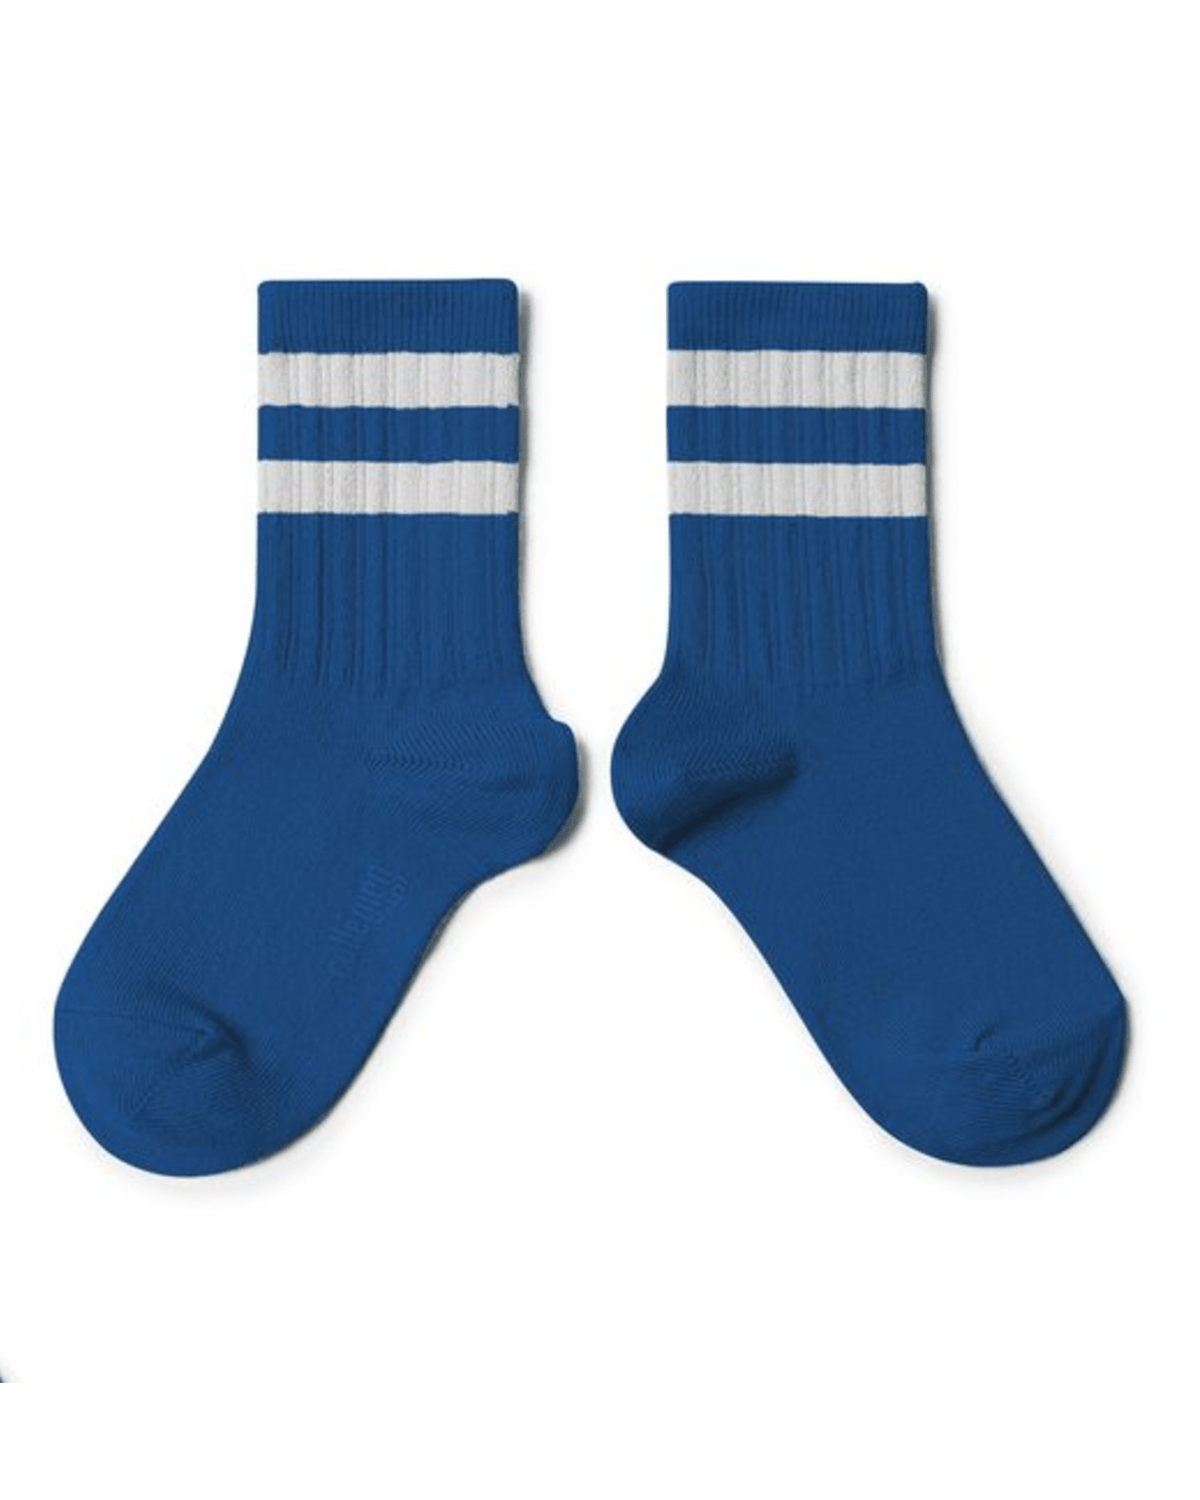 Collegien Accessories Nico Varsity Socks in Bleu Saphir